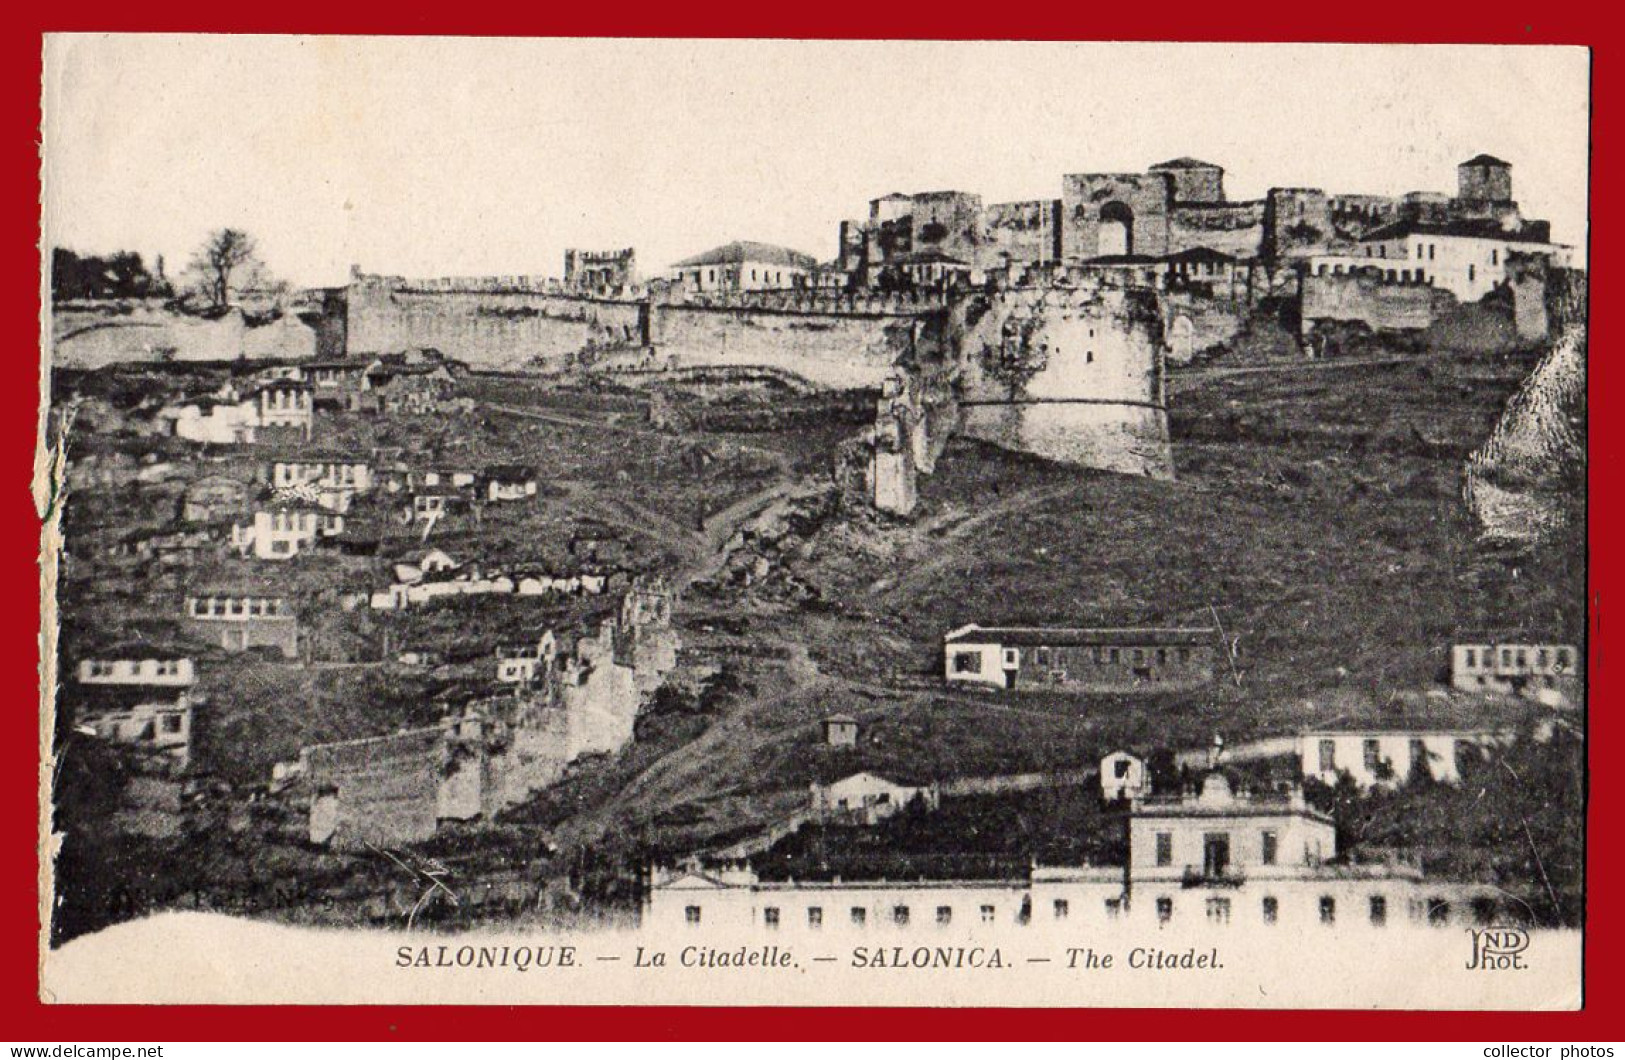 THESSALONIKI Salonica Greece 1910s (circa WWI). Lot of 8 vintage used postcards [de133]